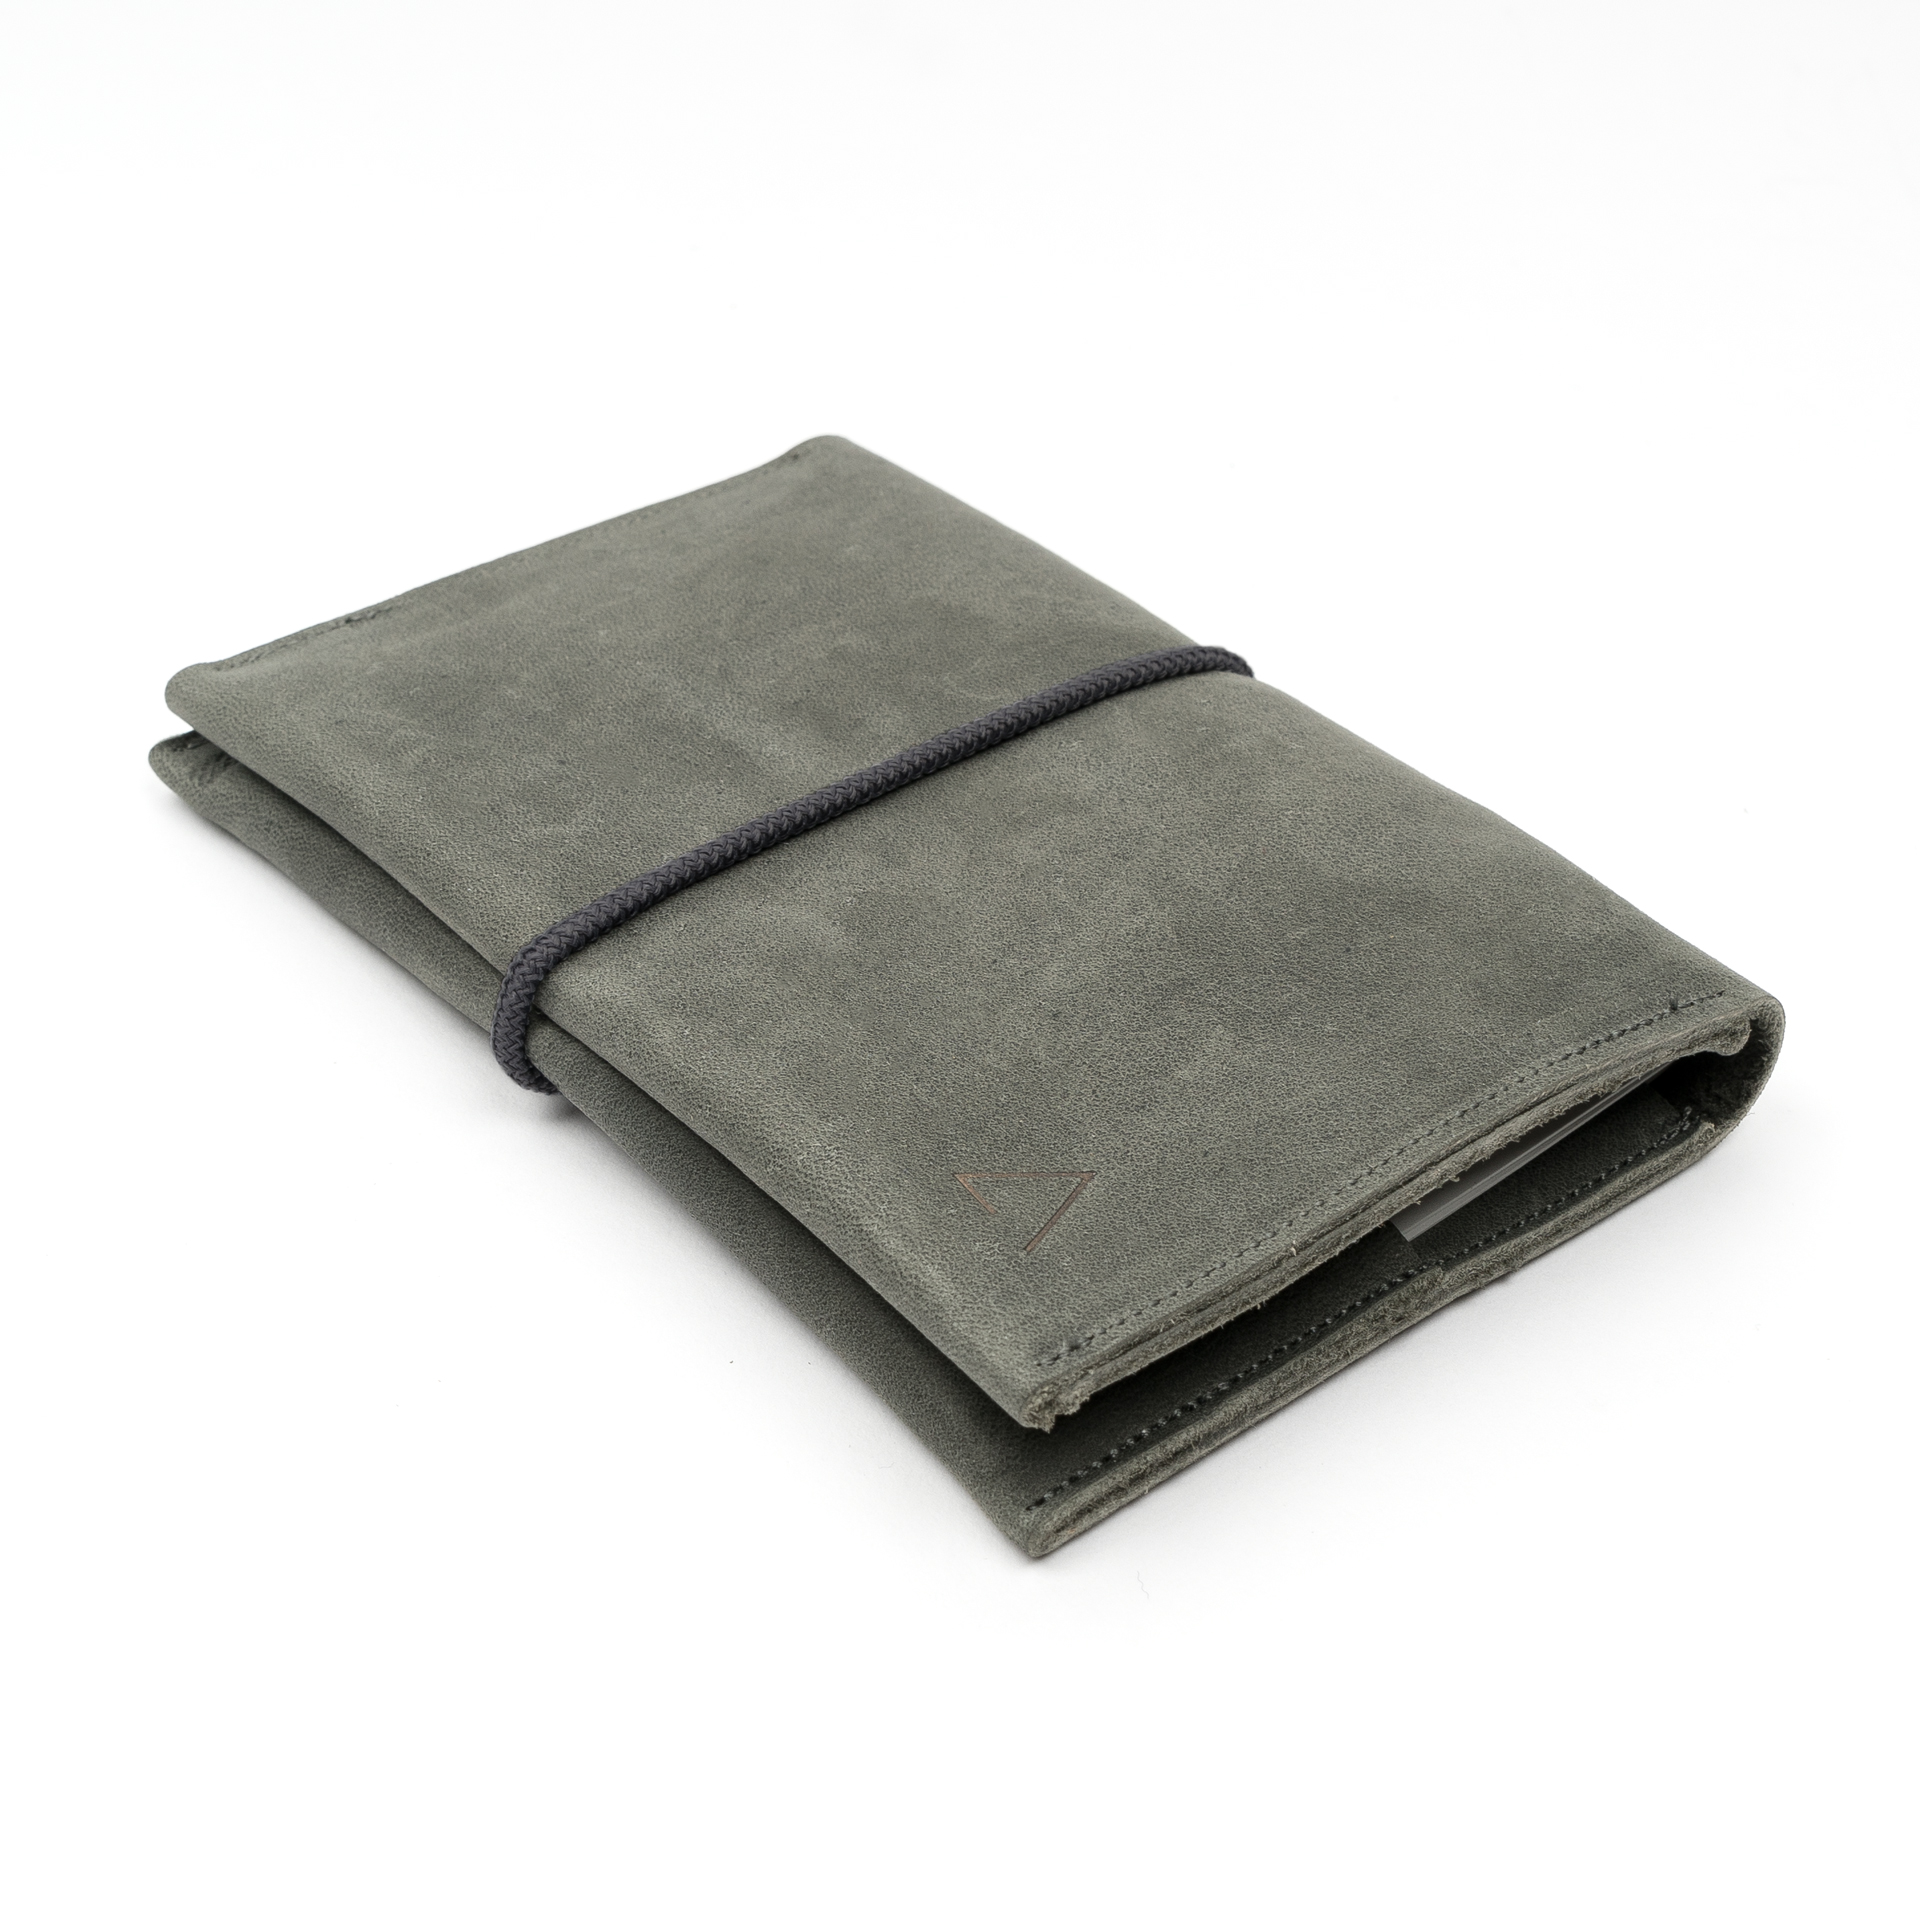 Portemonnaie OLI LARGE aus nachhaltigem Naturleder in Steingrau mit grauem Verschlussband